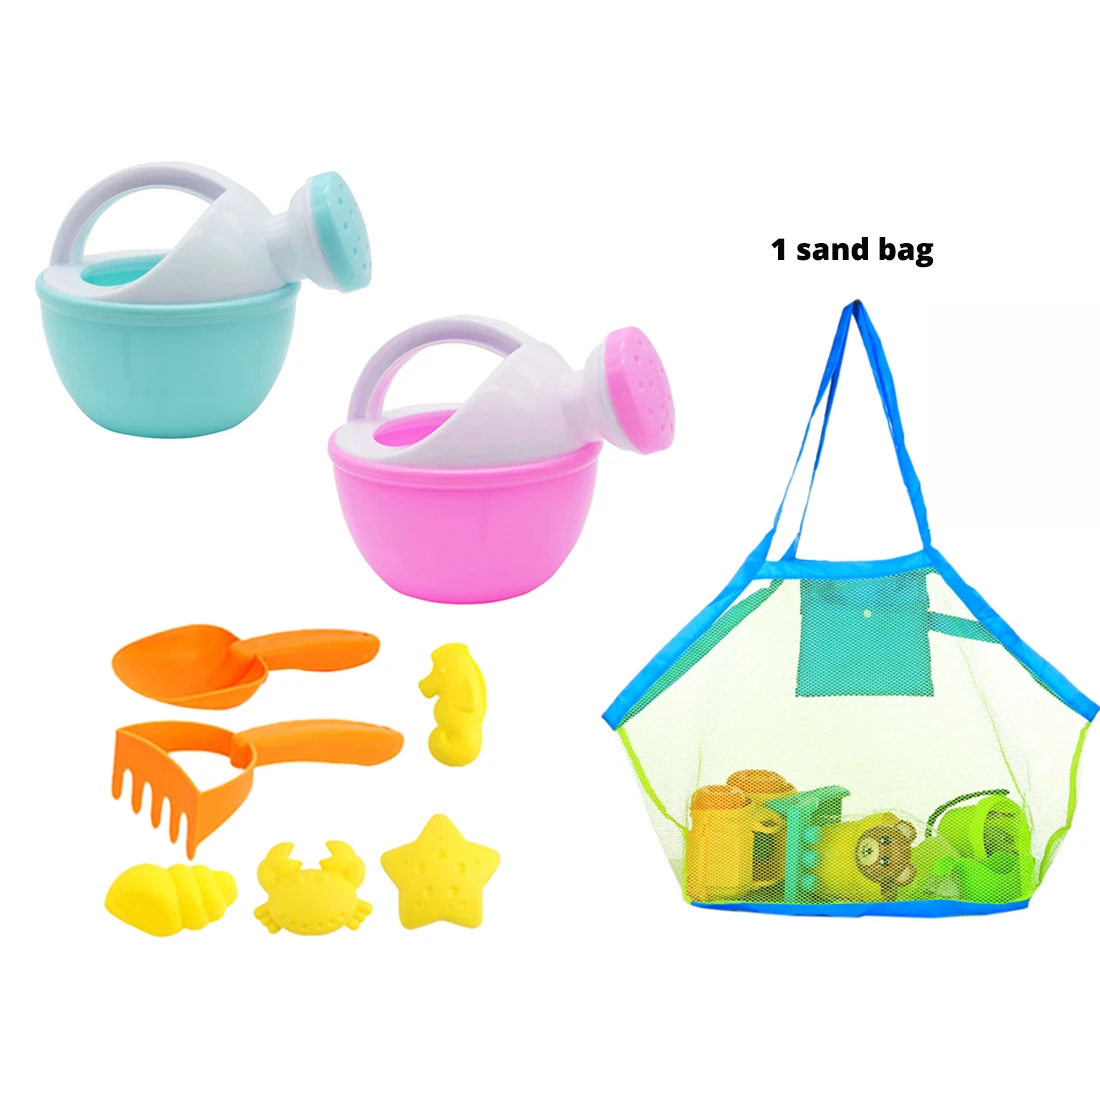 Мягкий резиновый песок, Пляжная игрушка, набор для улицы, пляжные формы для животных, шлифовальная игрушка, лопатка для песка, мишень+ большая пляжная сумка в сеточку-случайный цвет - Цвет: random color